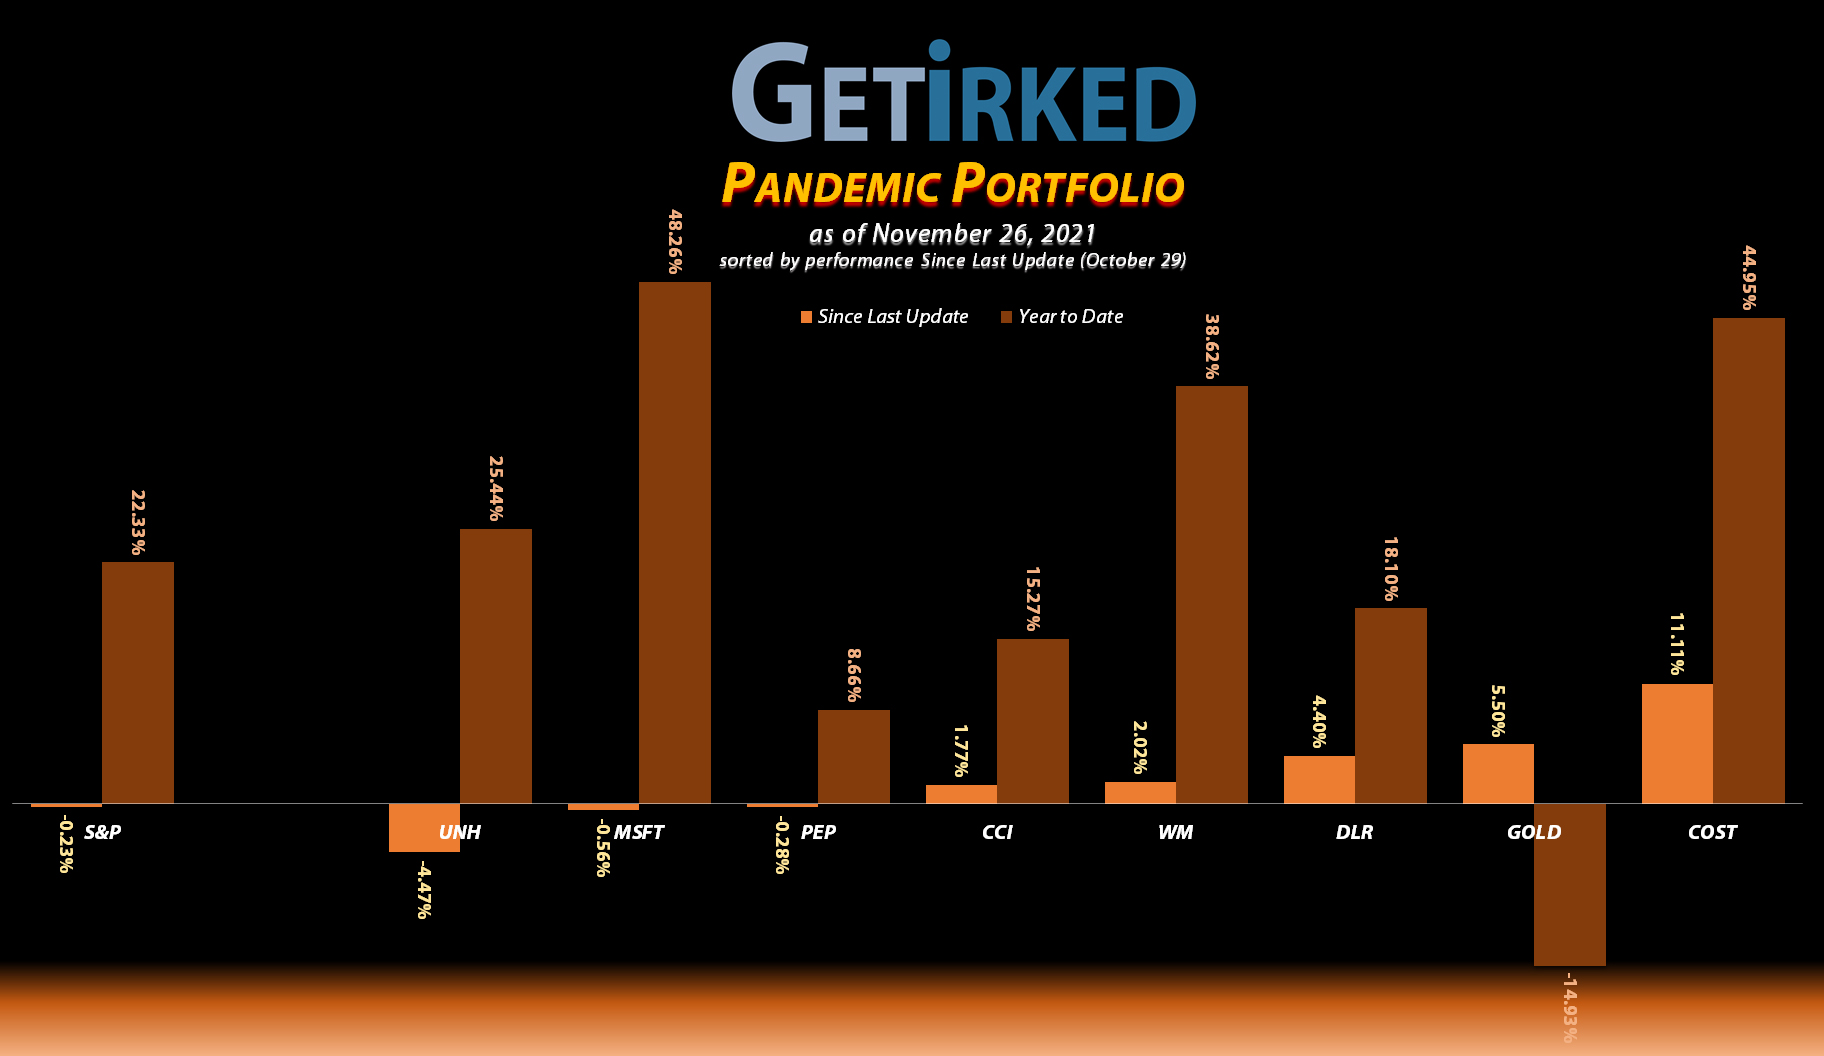 Get Irked - Pandemic Portfolio - November 26, 2021